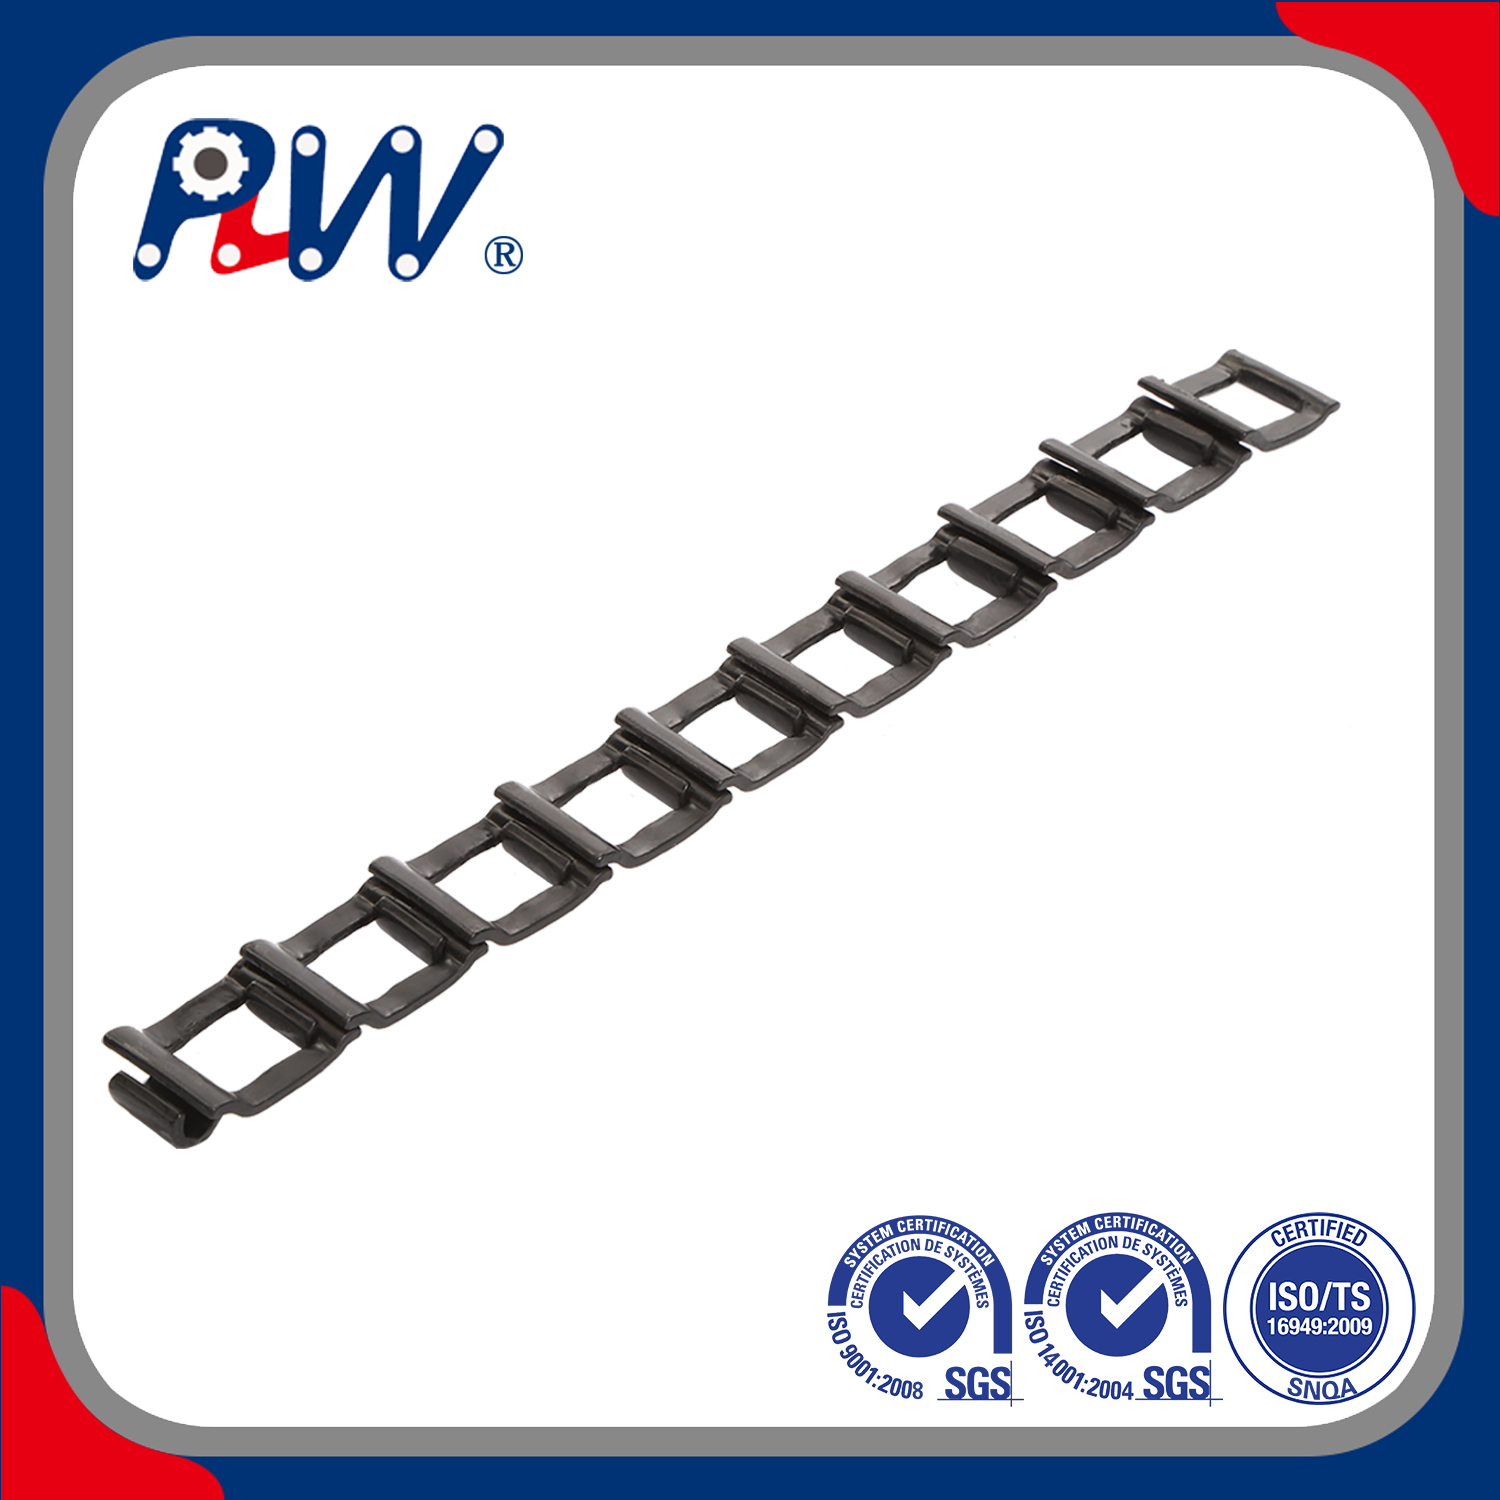 Cadena desmontable de acero de hierro fundido de alta calidad y entrega rápida y hecha a pedido (25, 32, 32 W) para sistema transportador